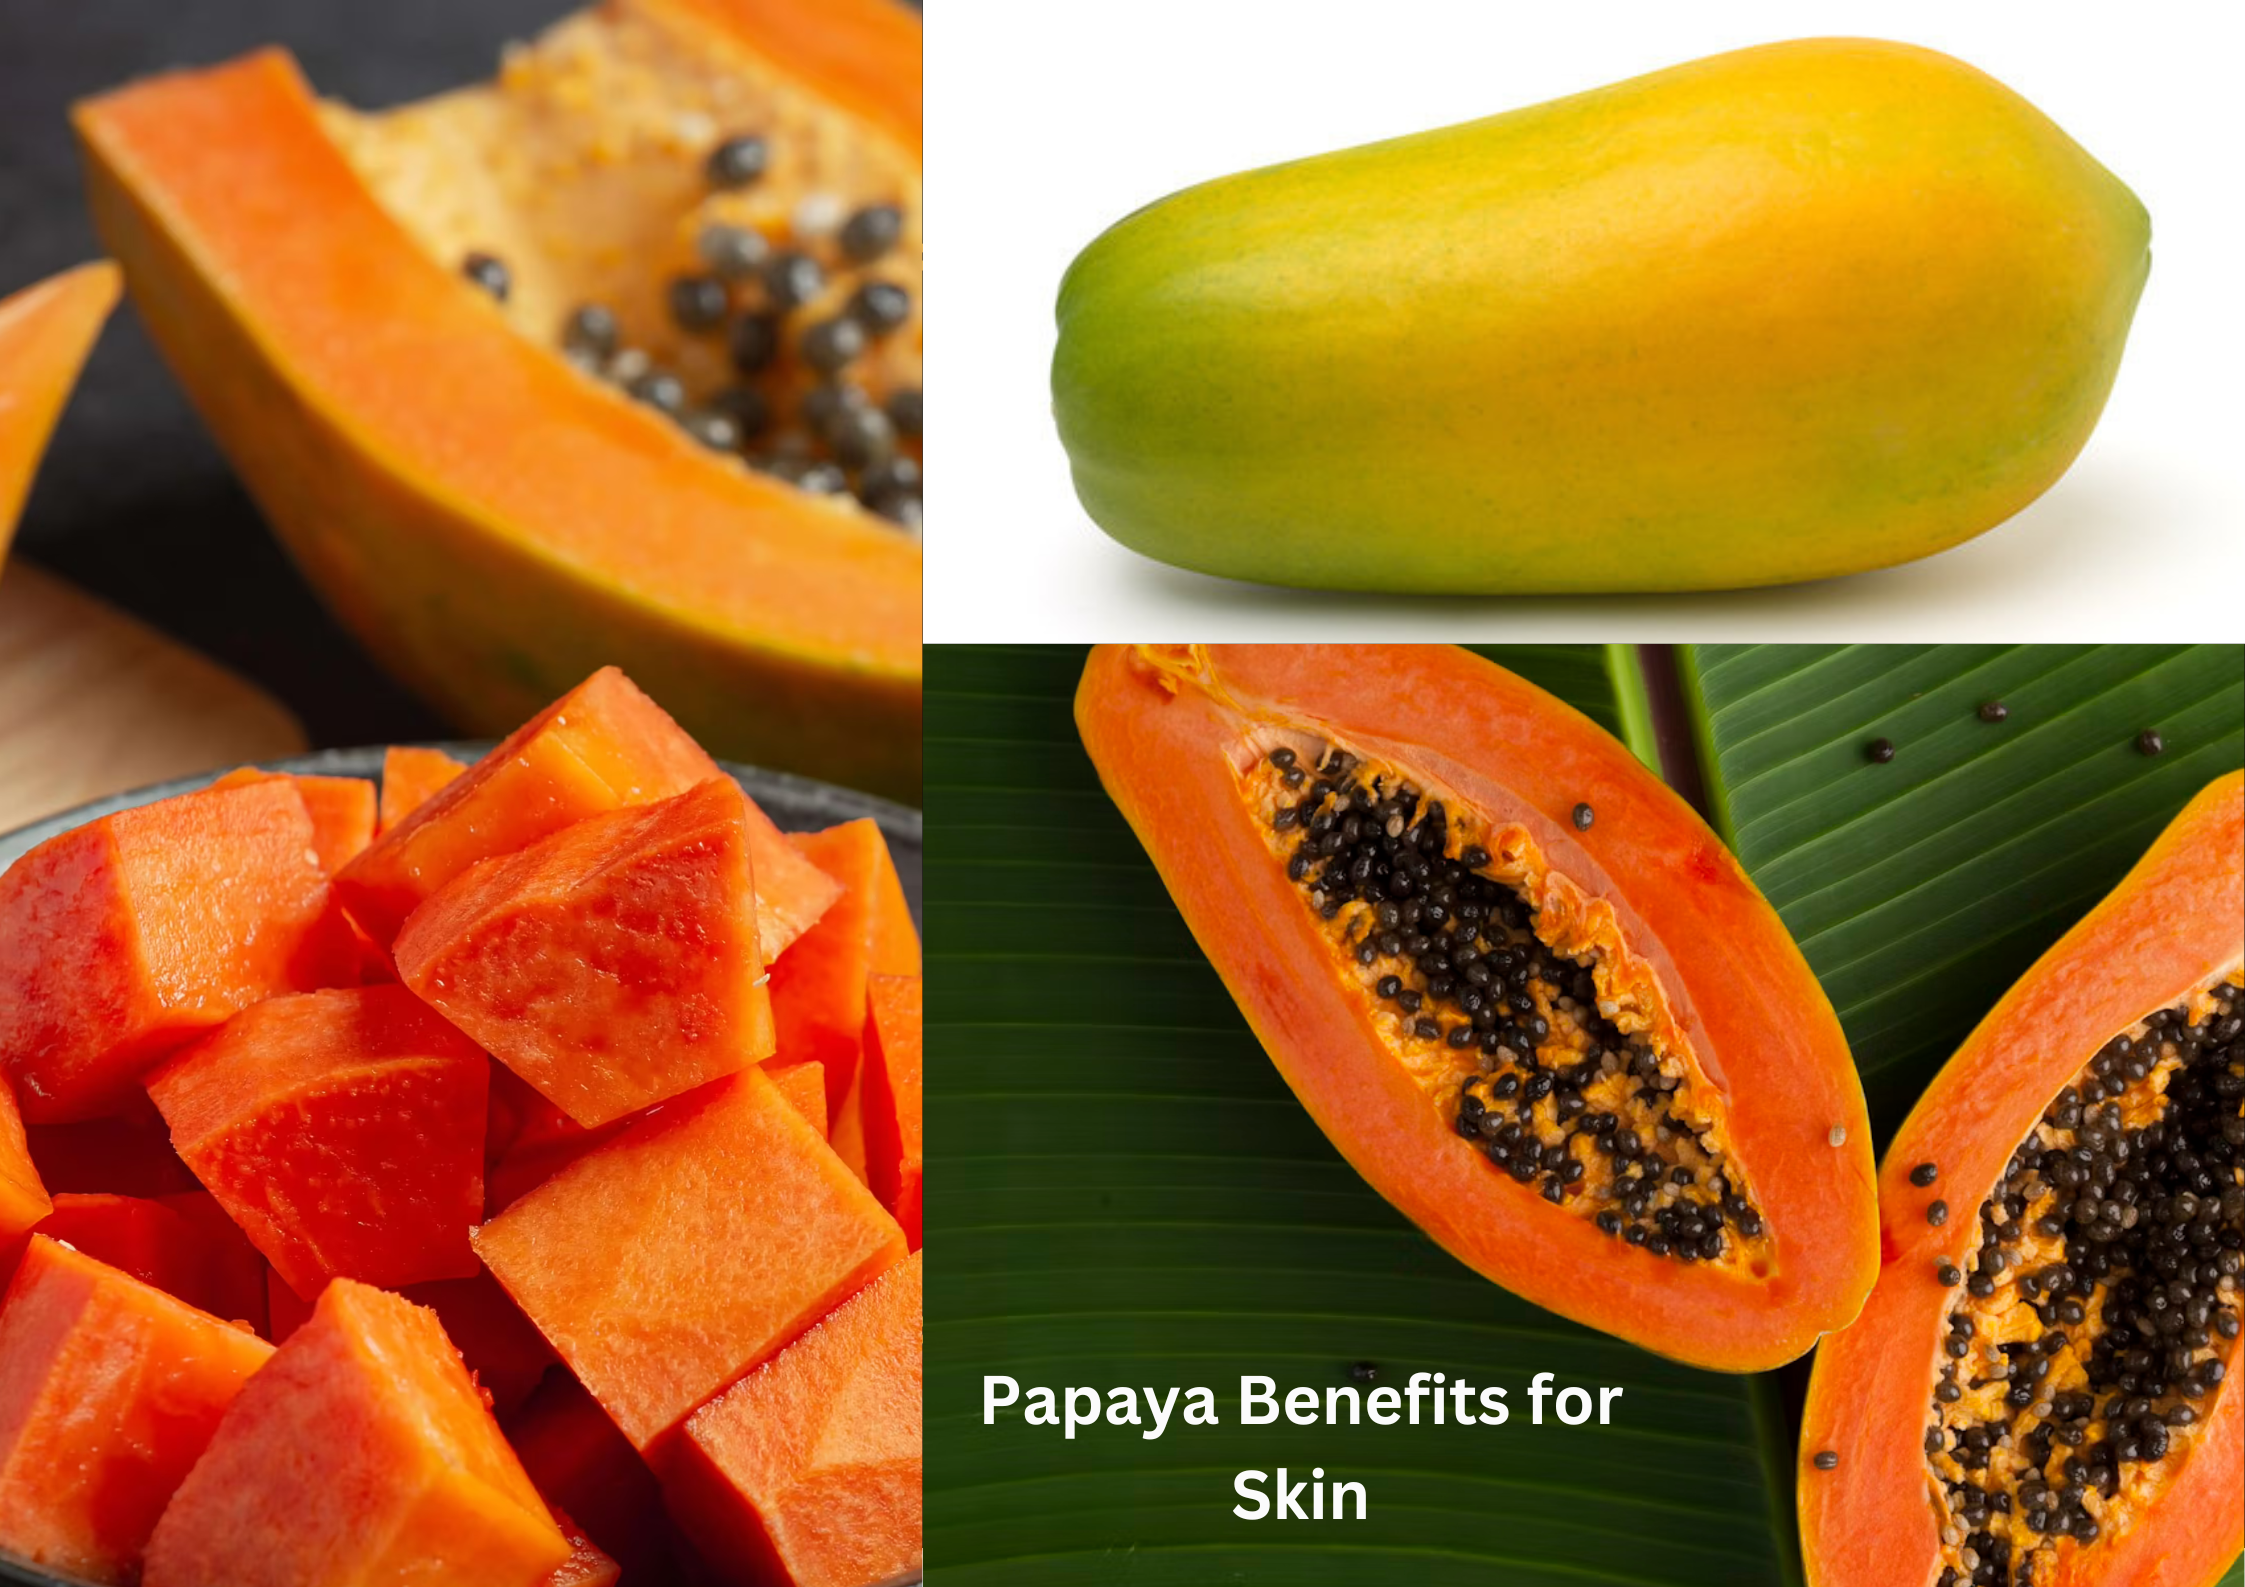 Papaya Benefits for Skin